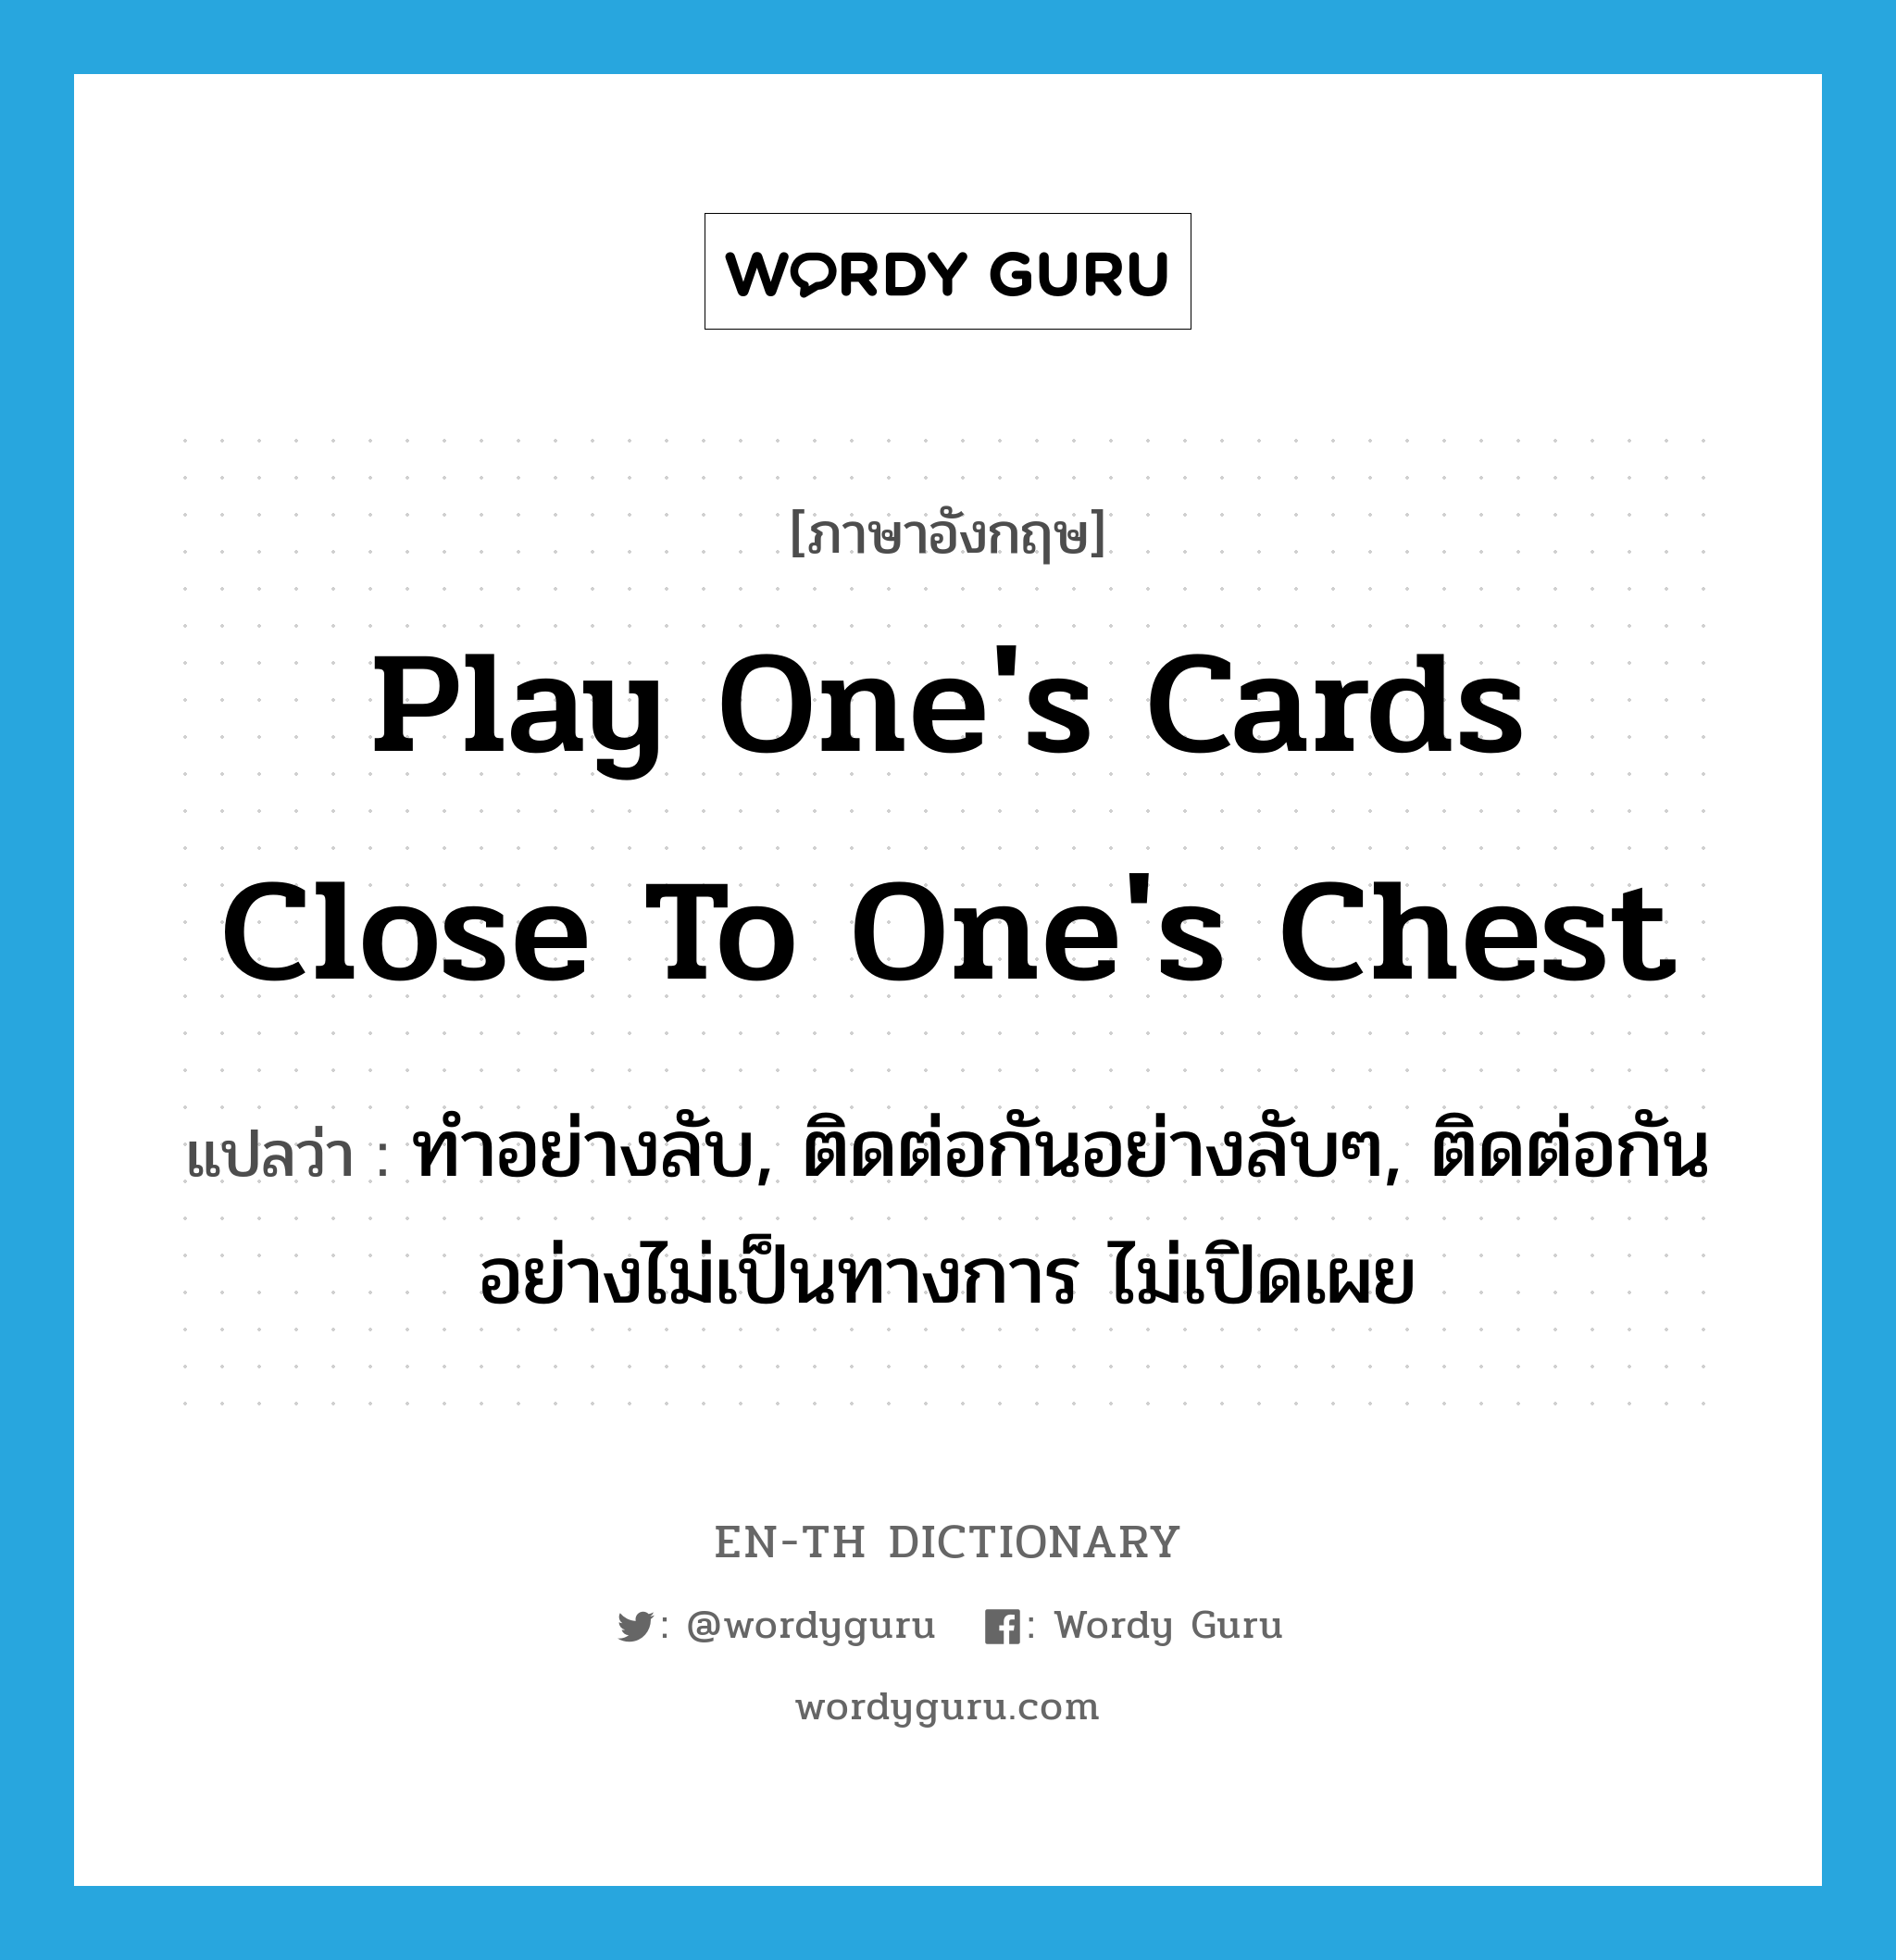 ทำอย่างลับ, ติดต่อกันอย่างลับๆ, ติดต่อกันอย่างไม่เป็นทางการ ไม่เปิดเผย ภาษาอังกฤษ?, คำศัพท์ภาษาอังกฤษ ทำอย่างลับ, ติดต่อกันอย่างลับๆ, ติดต่อกันอย่างไม่เป็นทางการ ไม่เปิดเผย แปลว่า play one's cards close to one's chest ประเภท IDM หมวด IDM